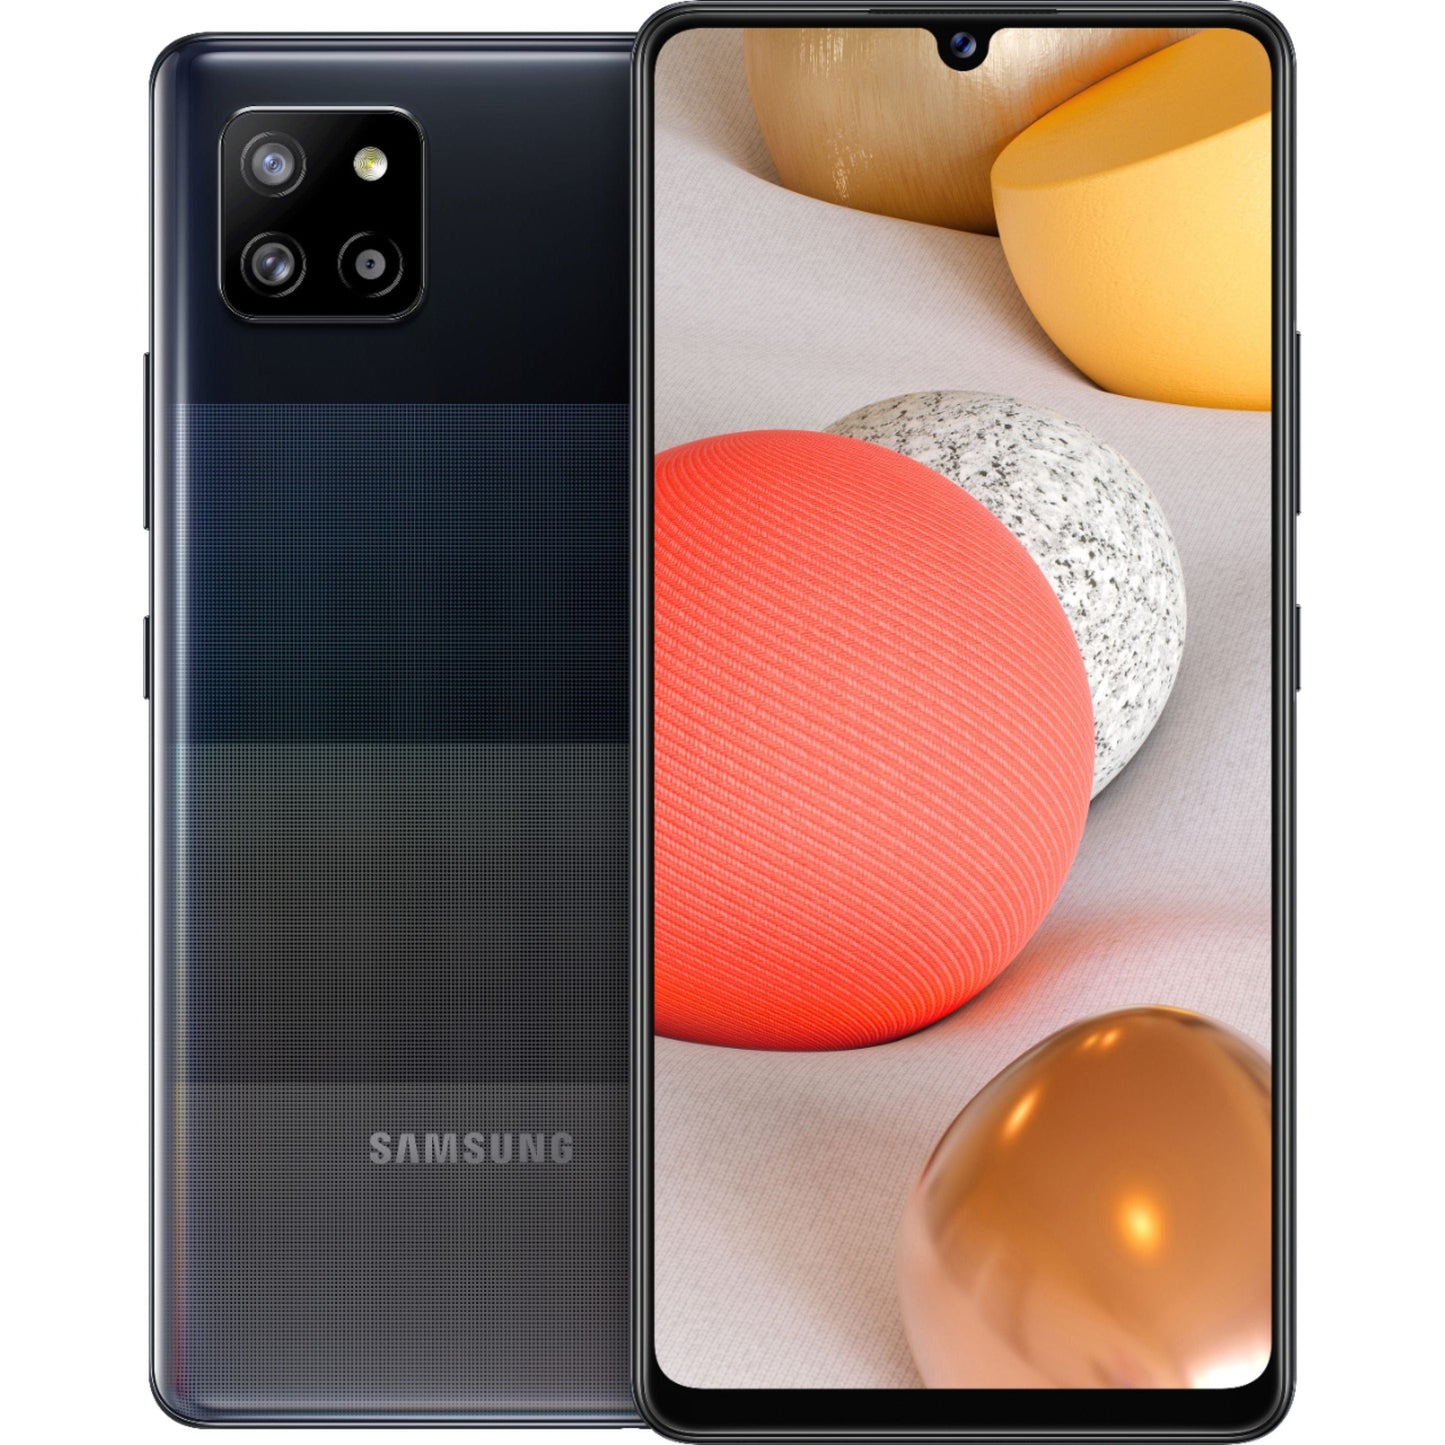 Samsung - Galaxy A42 5G 128GB (Unlocked) - Black